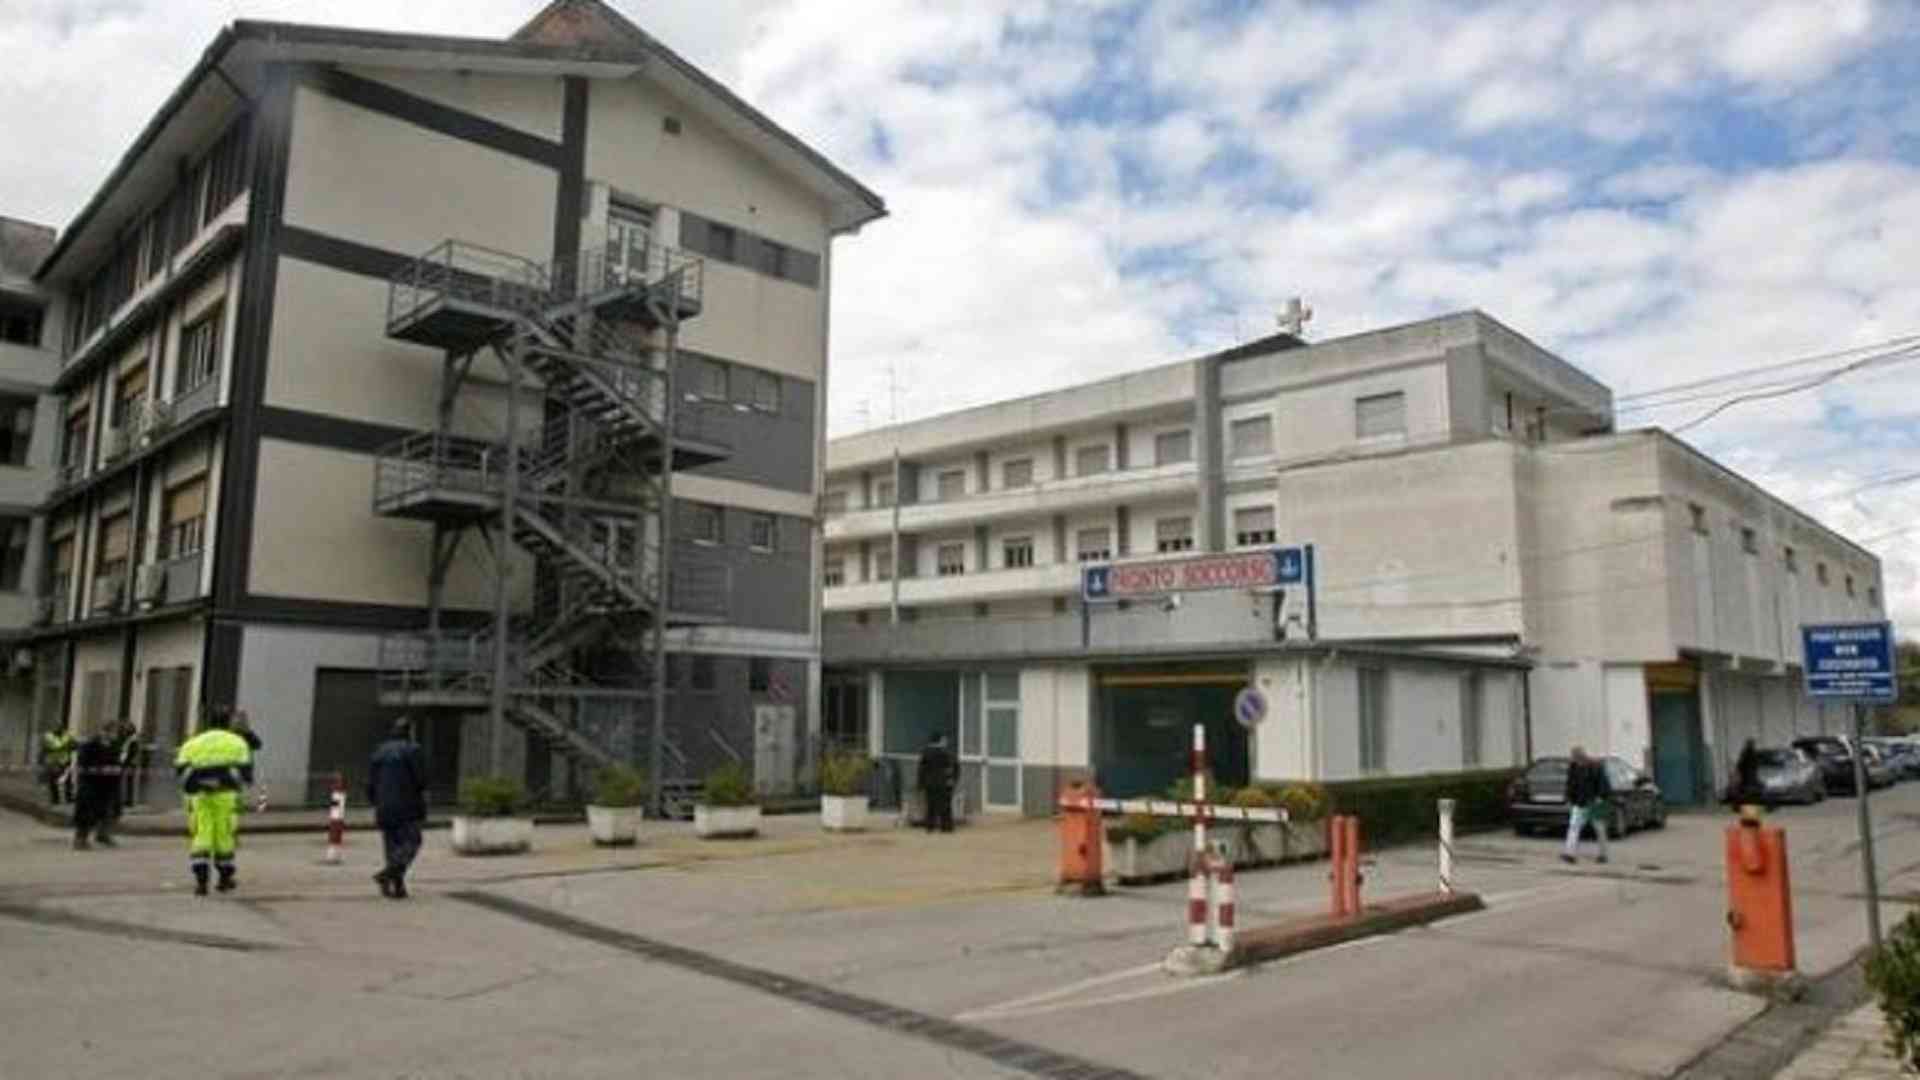 Vallo di Diano: Covid, M5S, richiesta apertura Ospedale Santissima Annunziata a struttura emergenziale